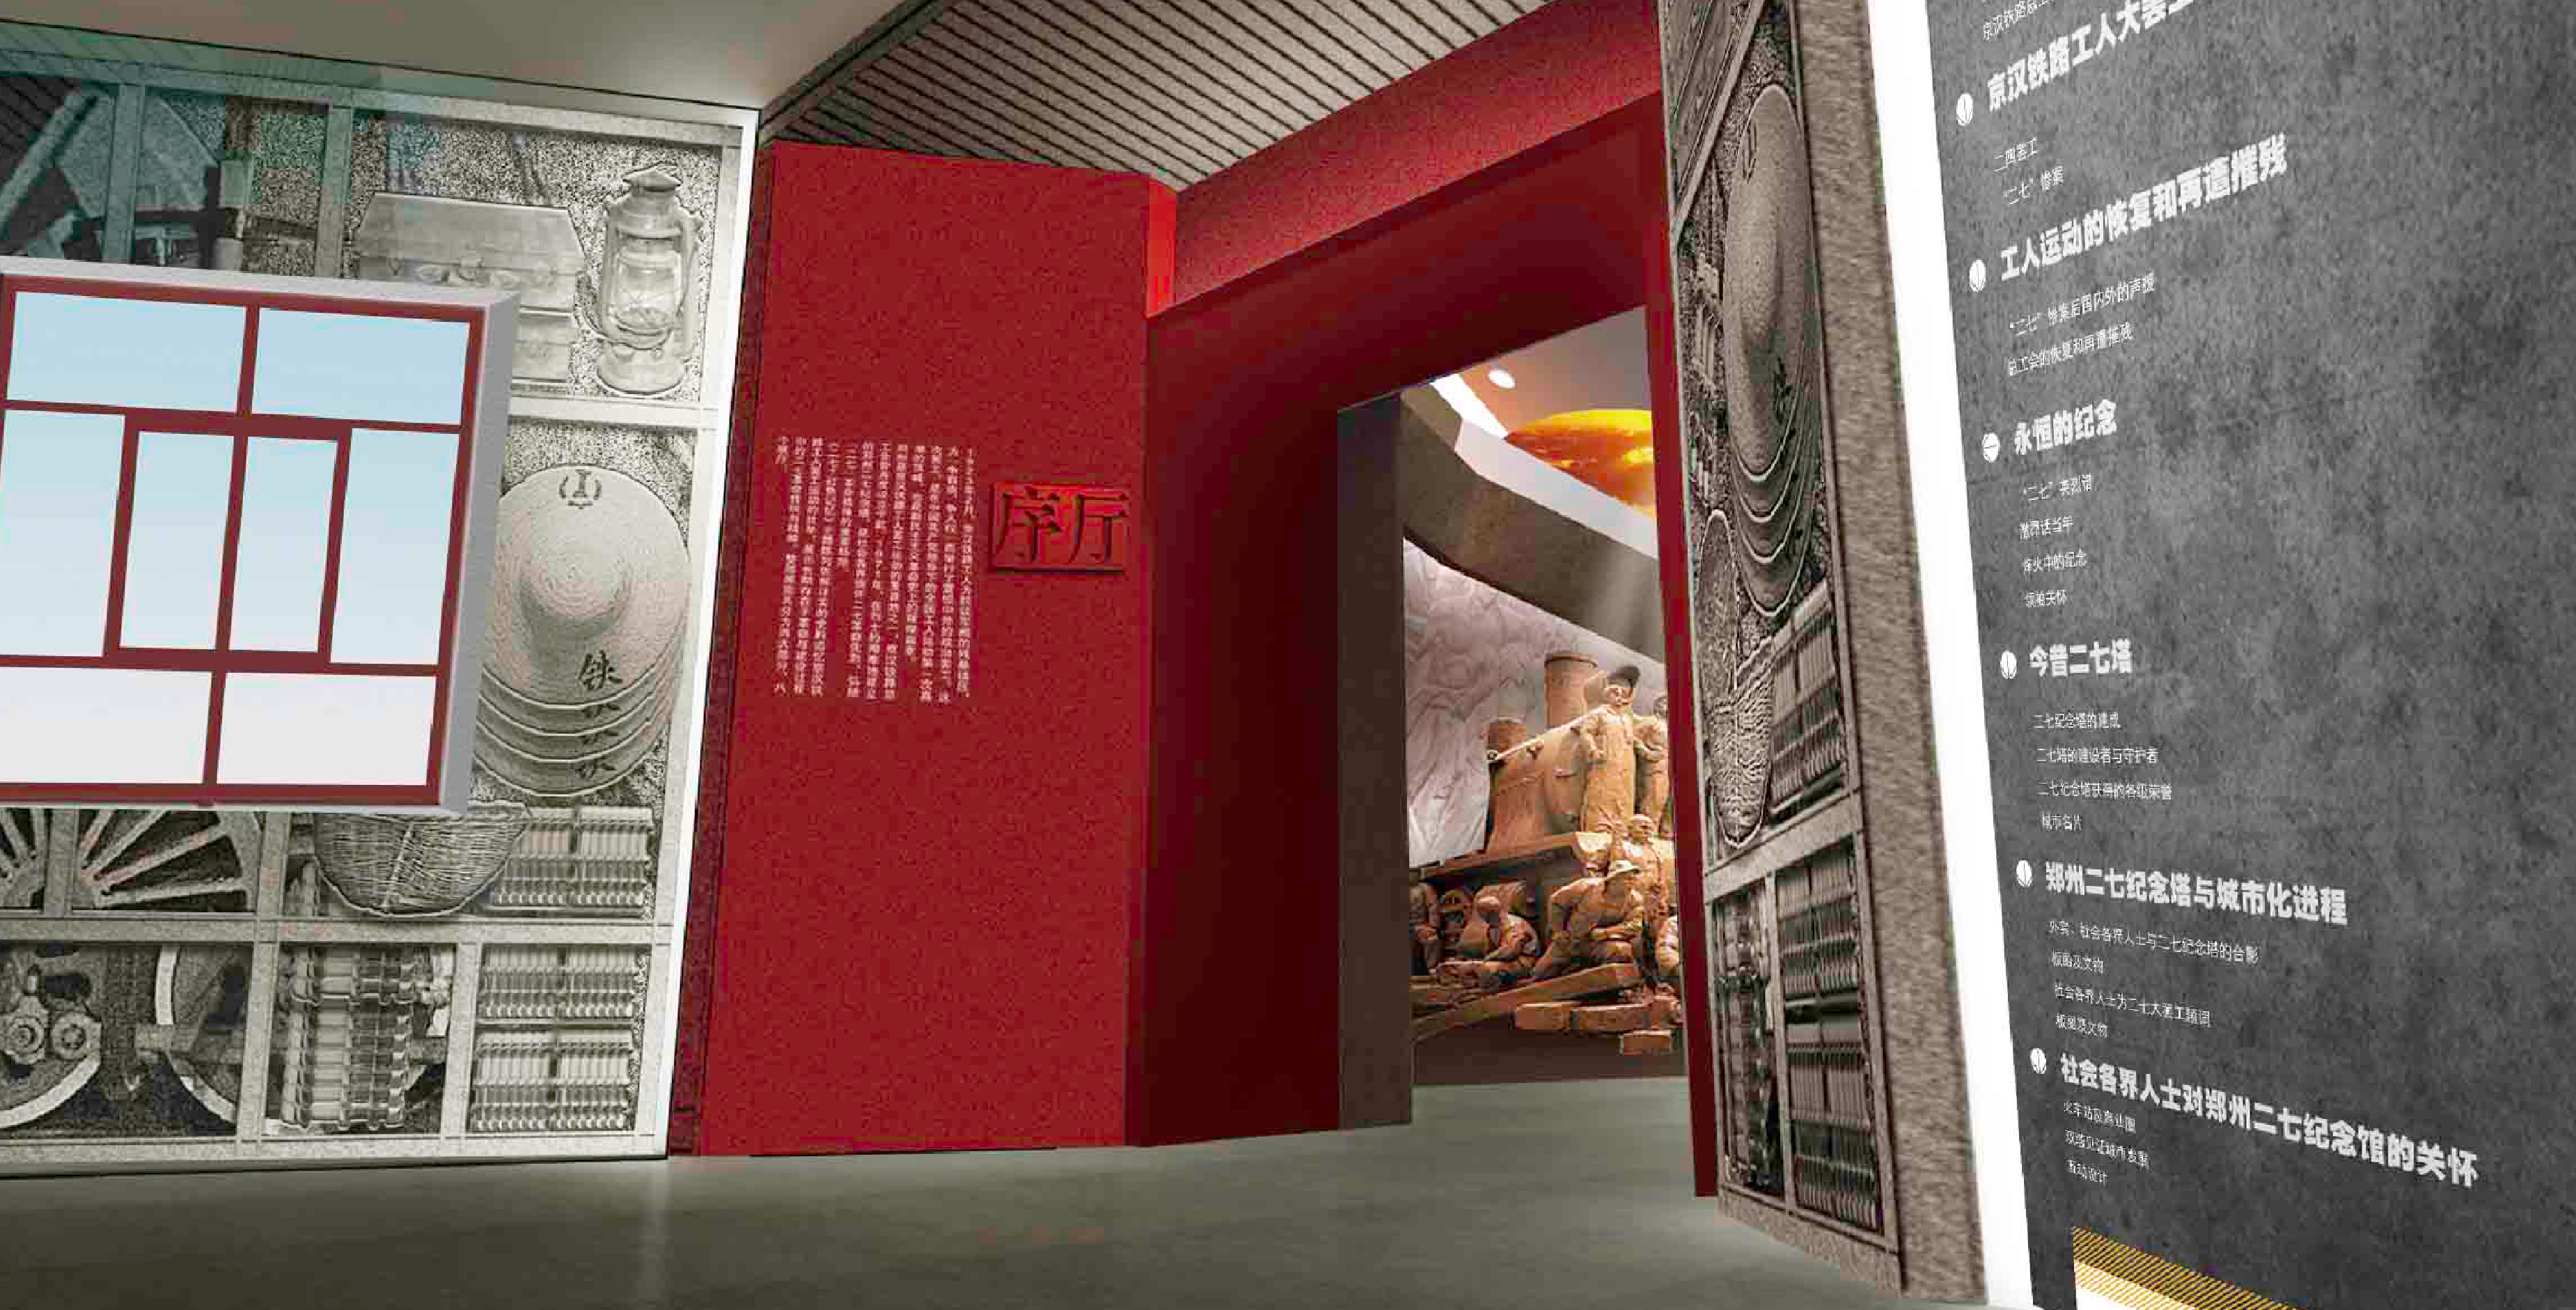 腾升装饰|郑州二七纪念塔基本陈列提升项目装饰装修工程施工